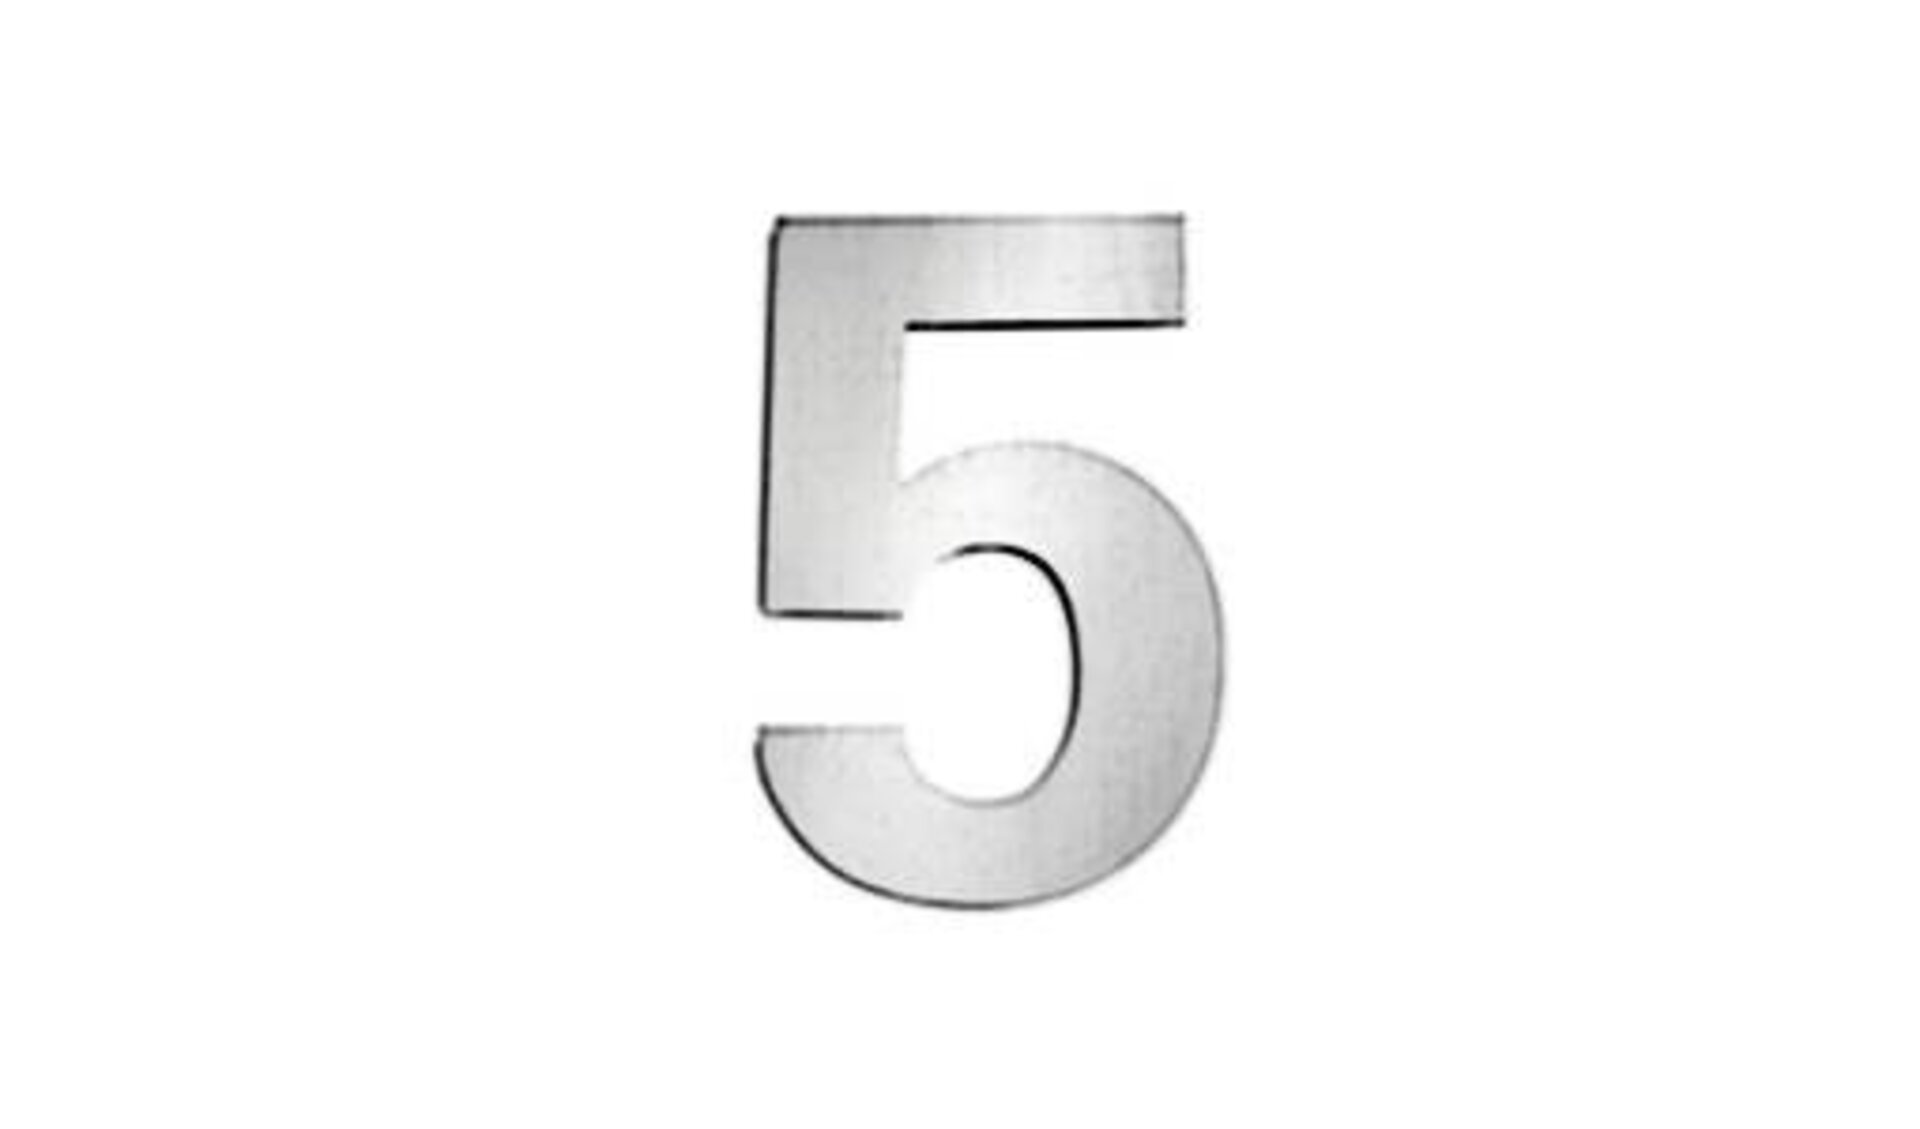 Icon für Hausnummern zeigt eine 5 aus gebürstetem Edelstahl und steht sinnbildlich für alle Hausnummern innerhalb der Produktwelt.